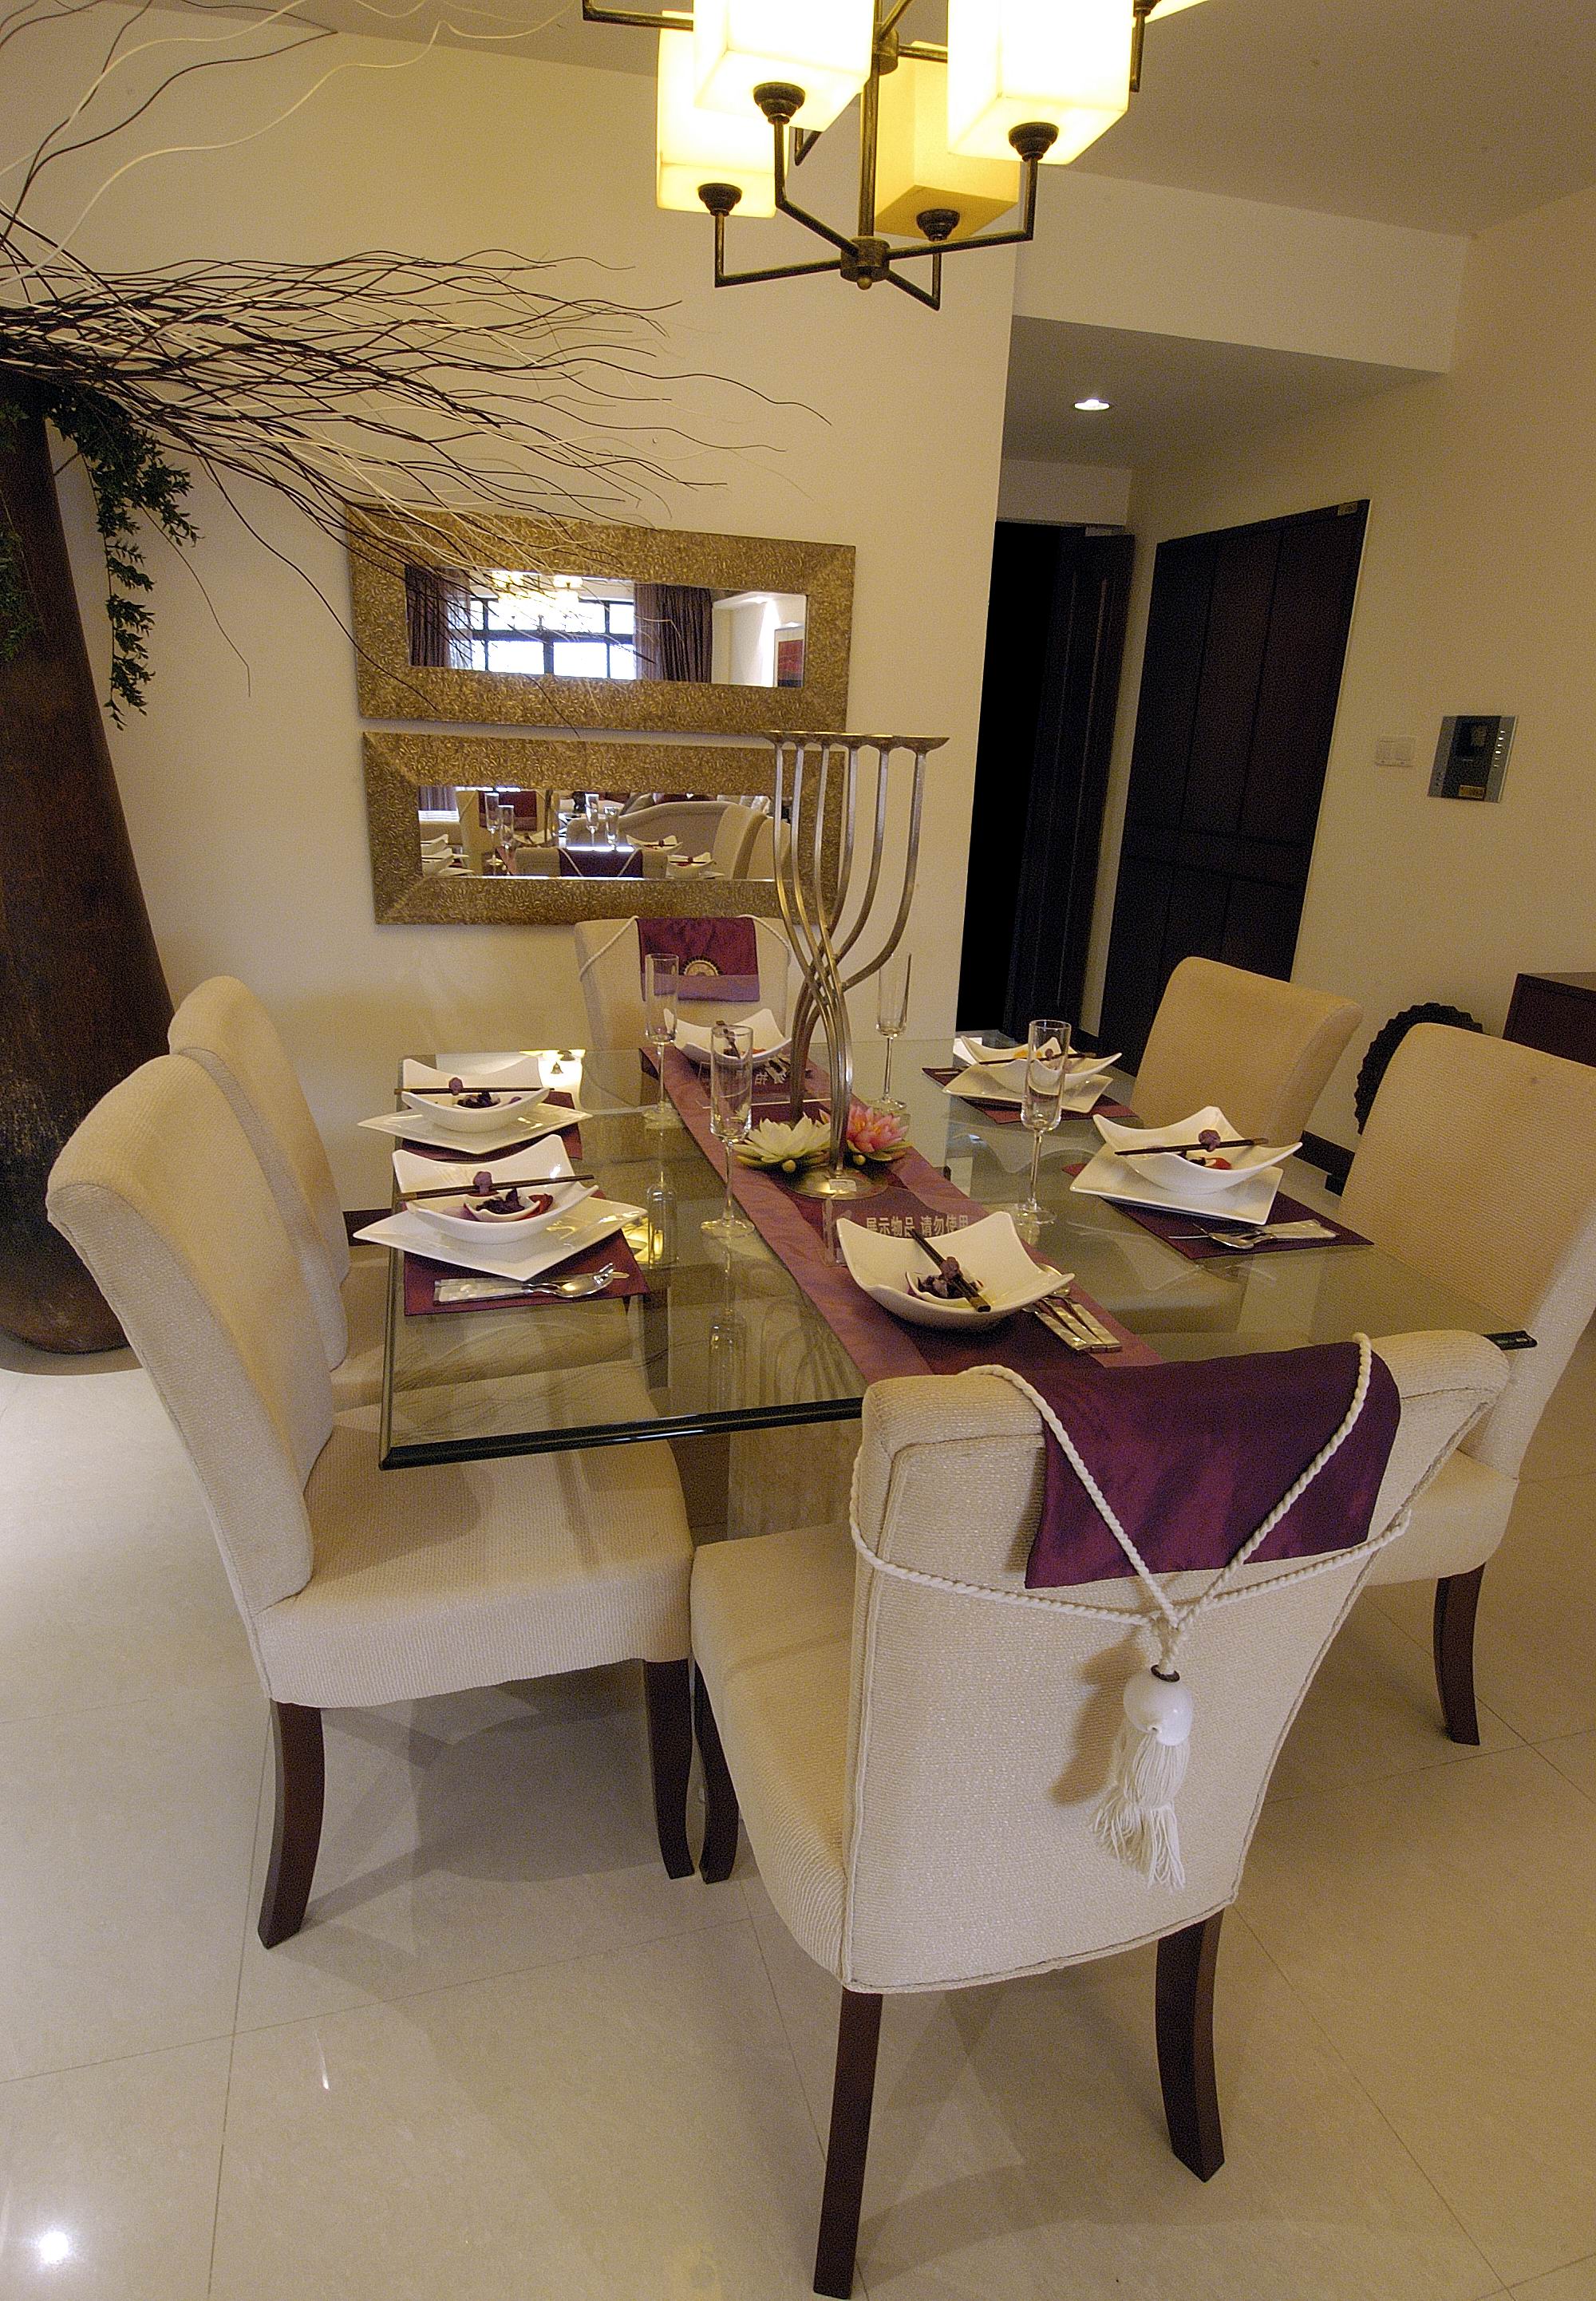 公寓 中式 餐厅图片来自紫禁尚品国际装饰小孔在中式风格泛海国际案例的分享